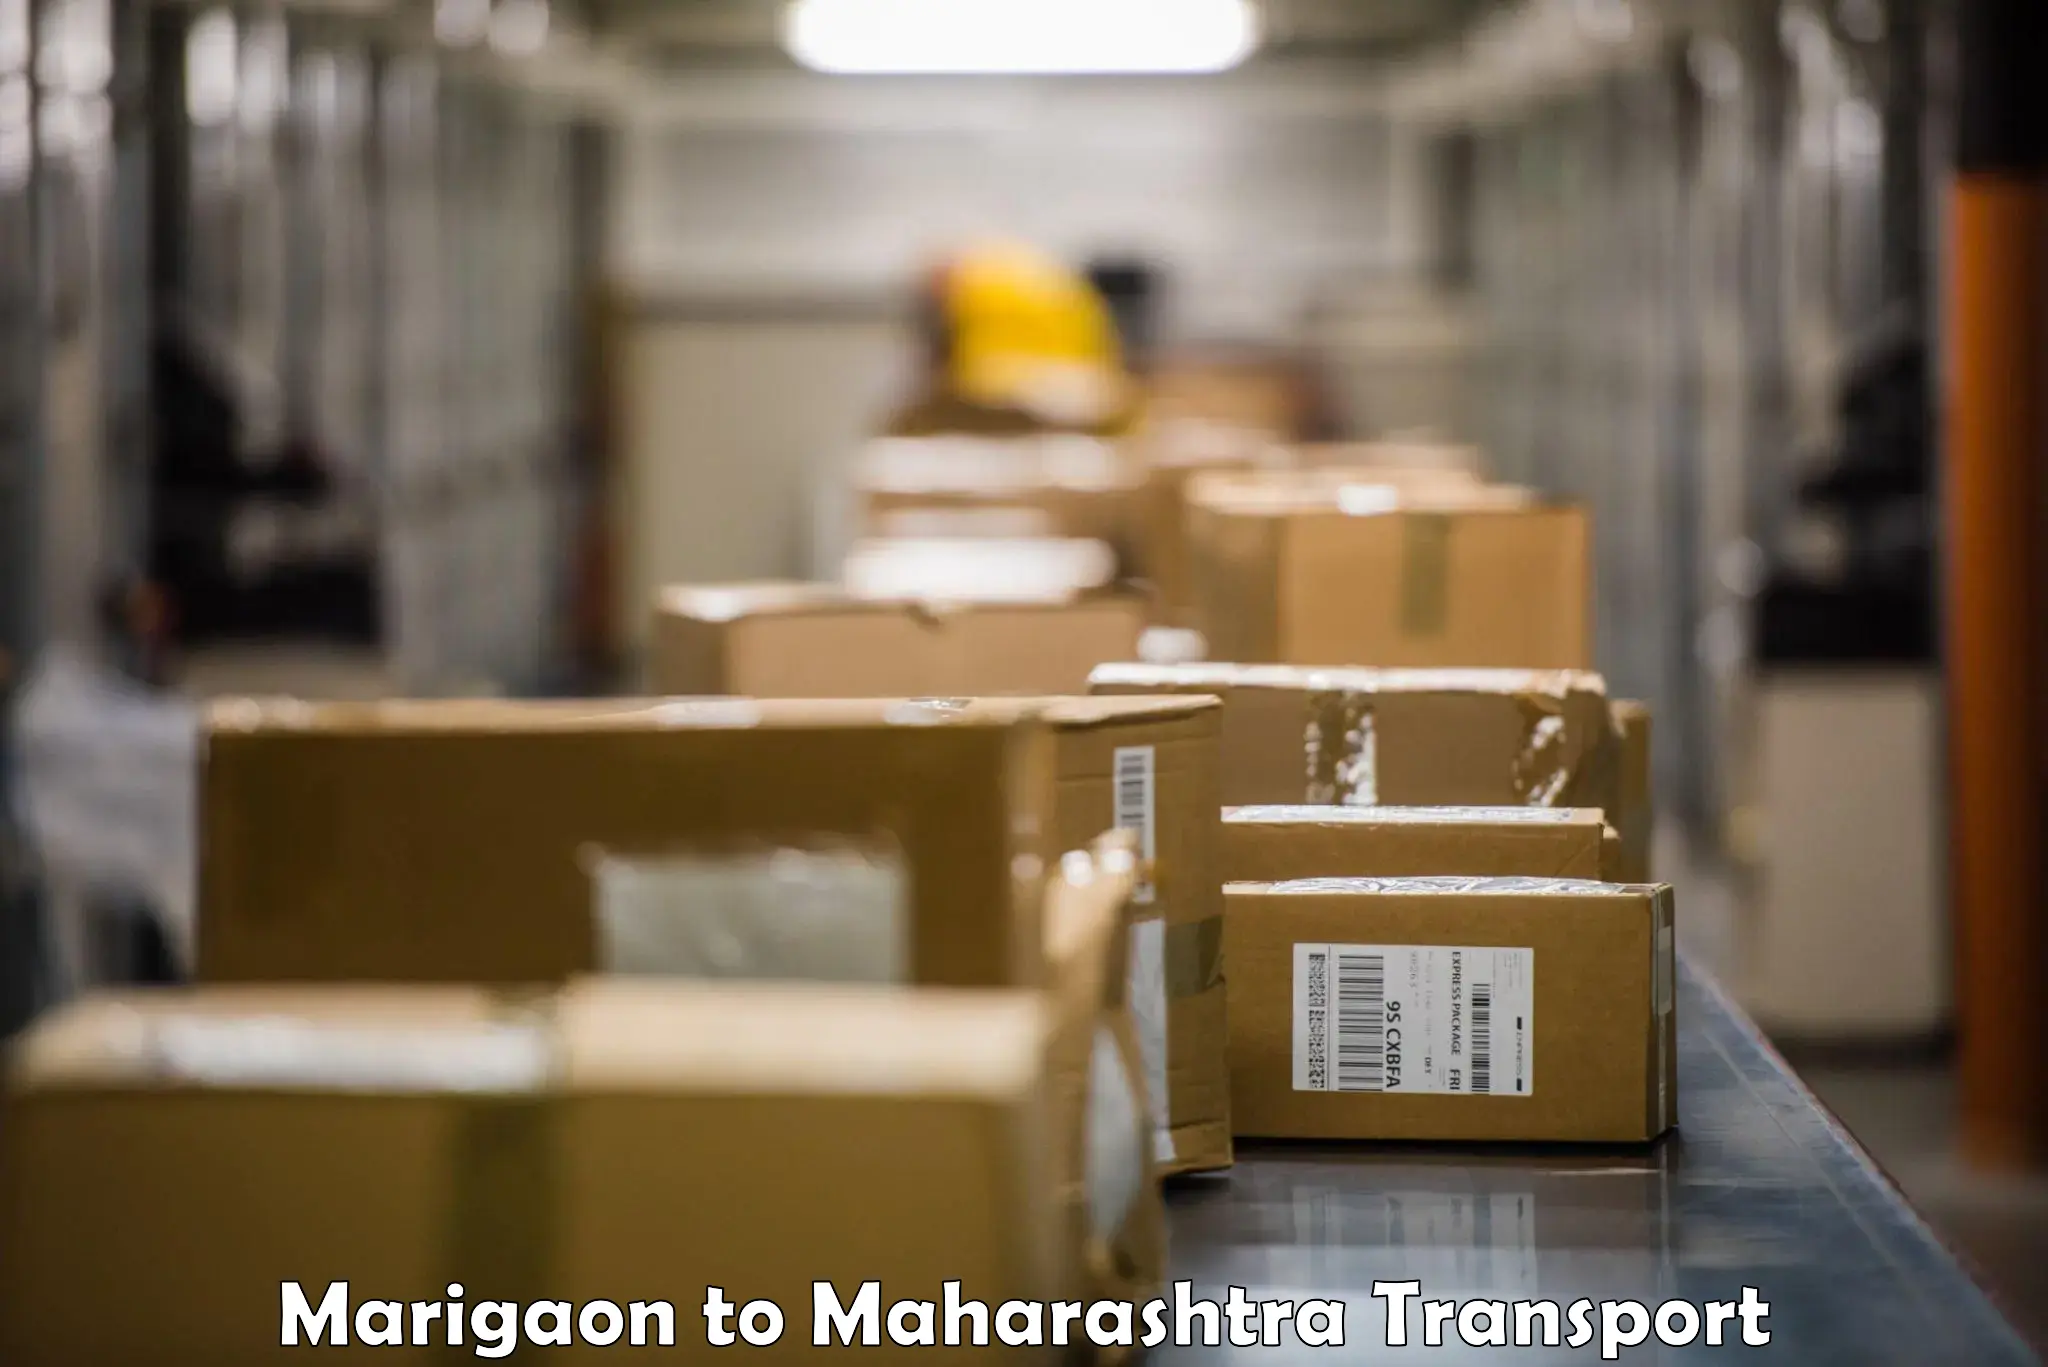 Shipping partner Marigaon to Shivajinagar